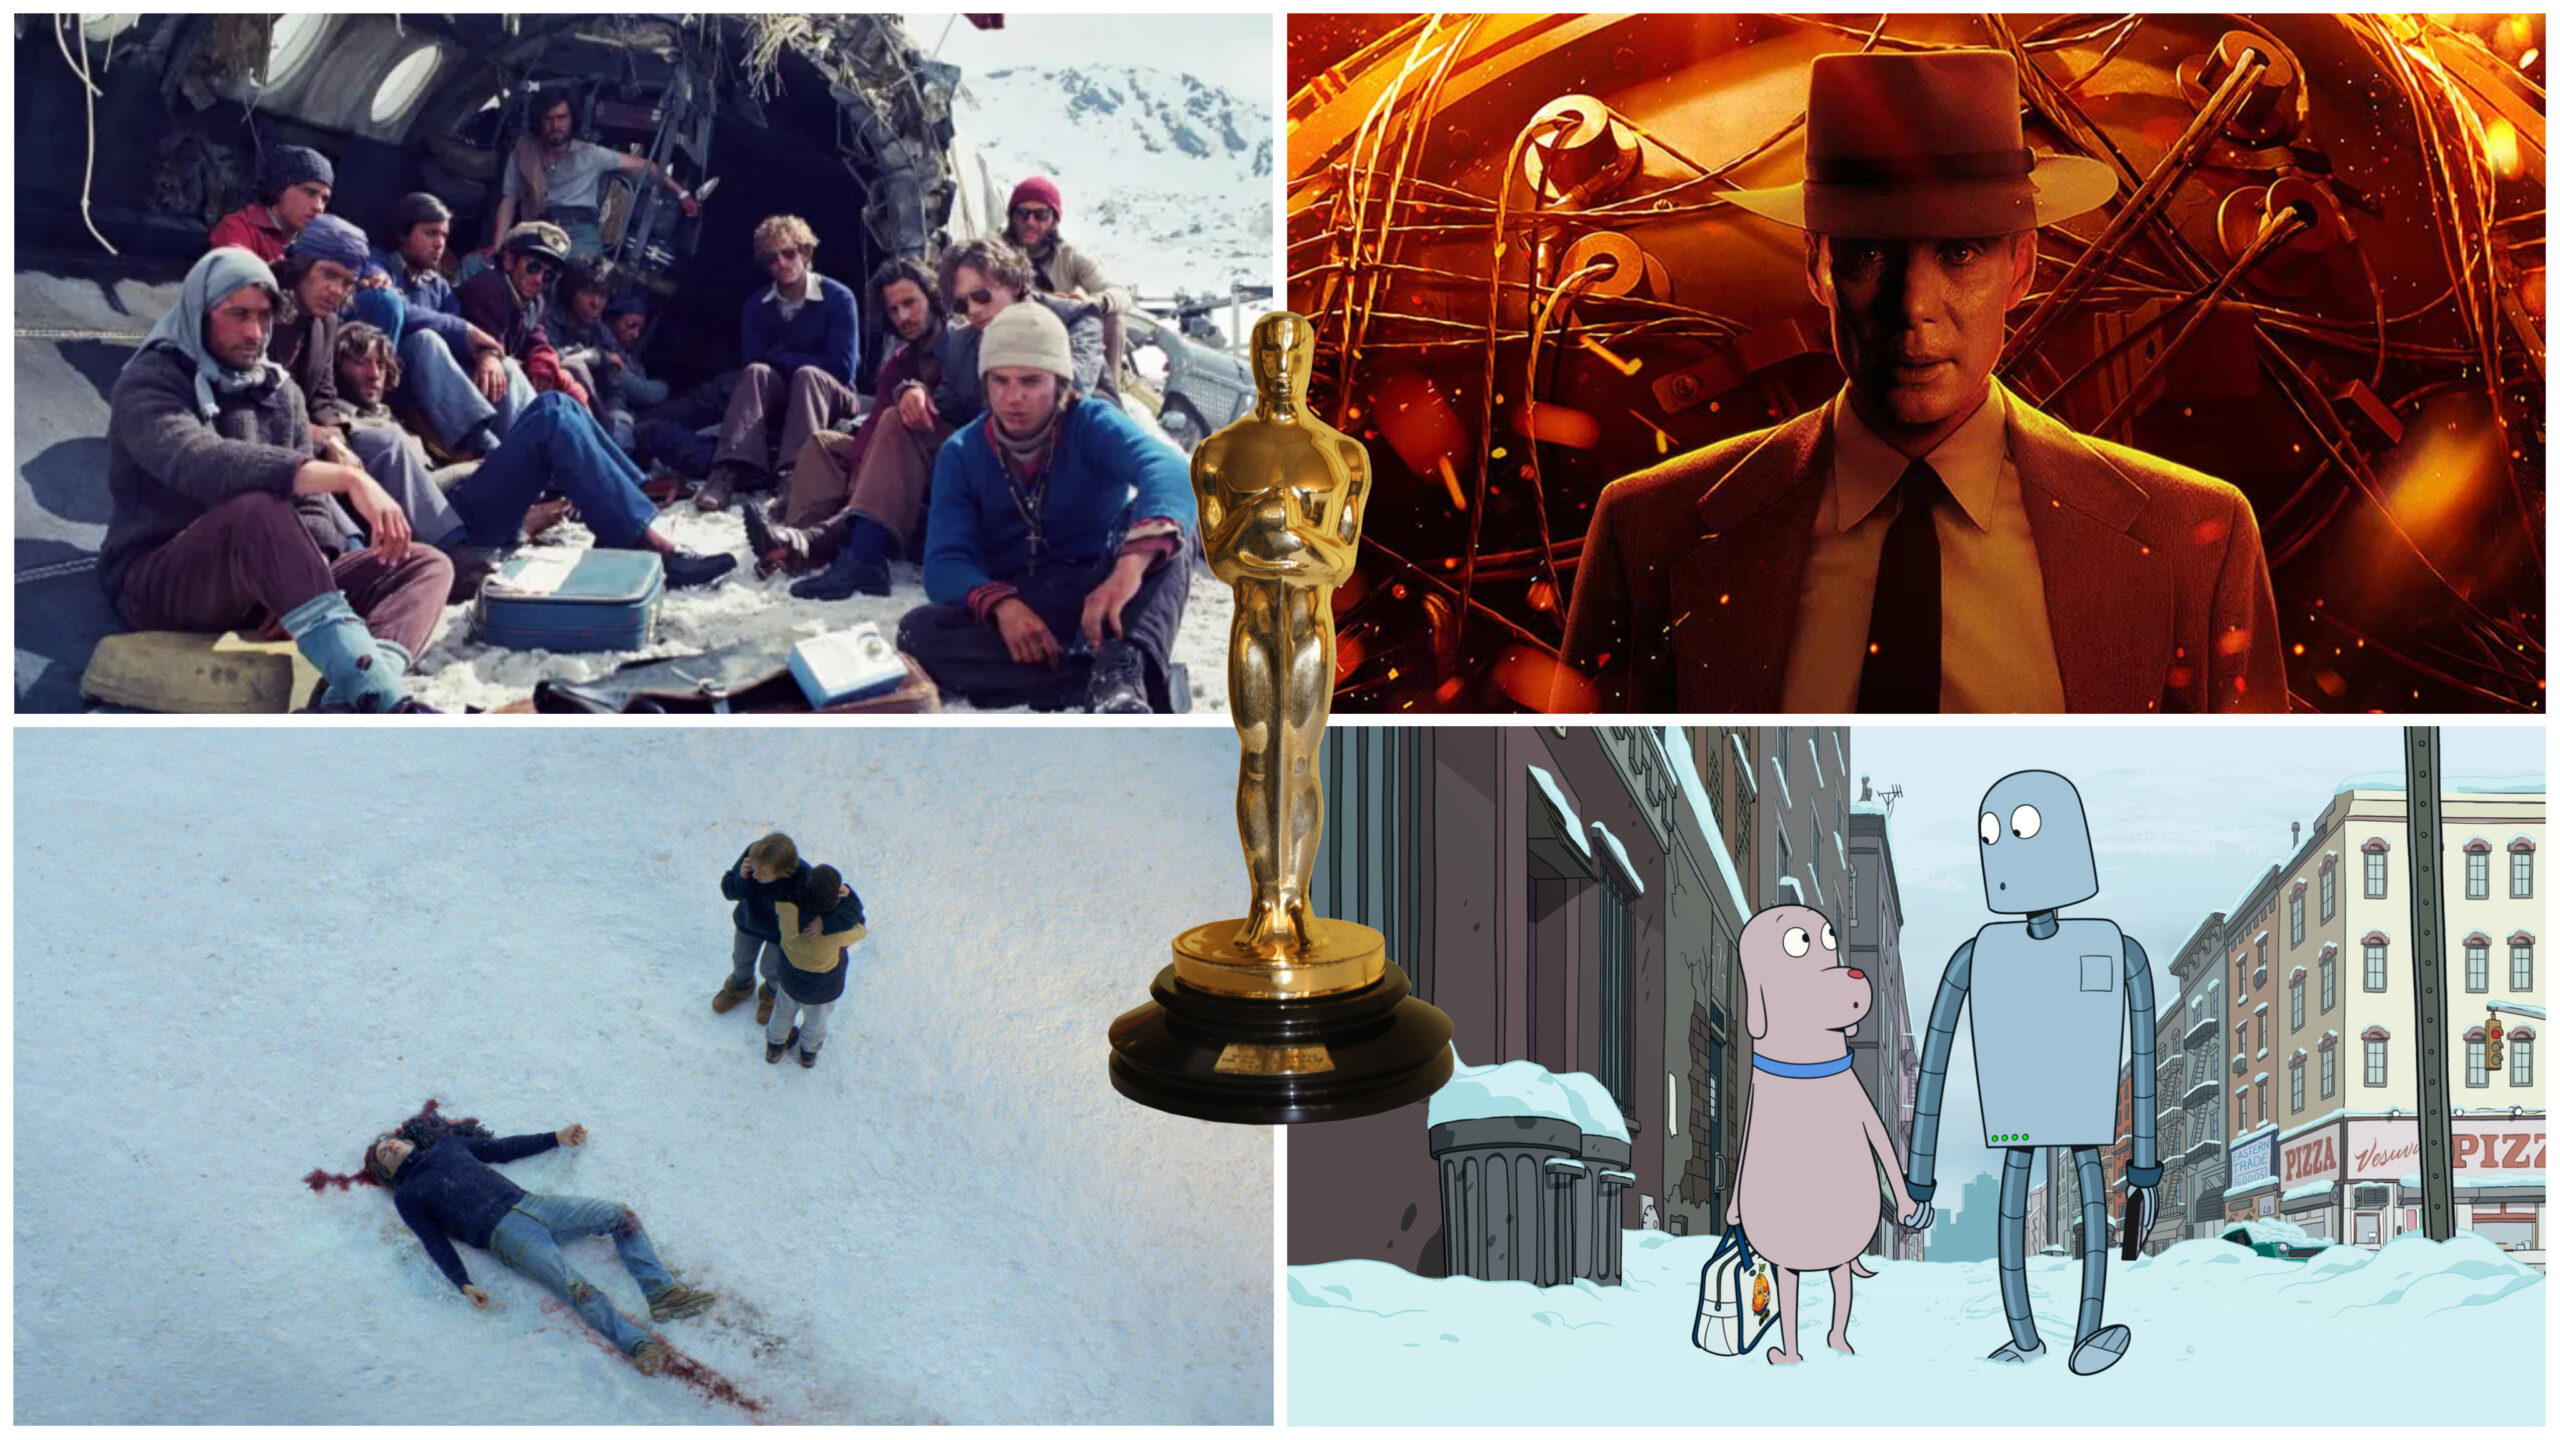 50 millones de espectadores llevan La sociedad de la nieve a los Óscar